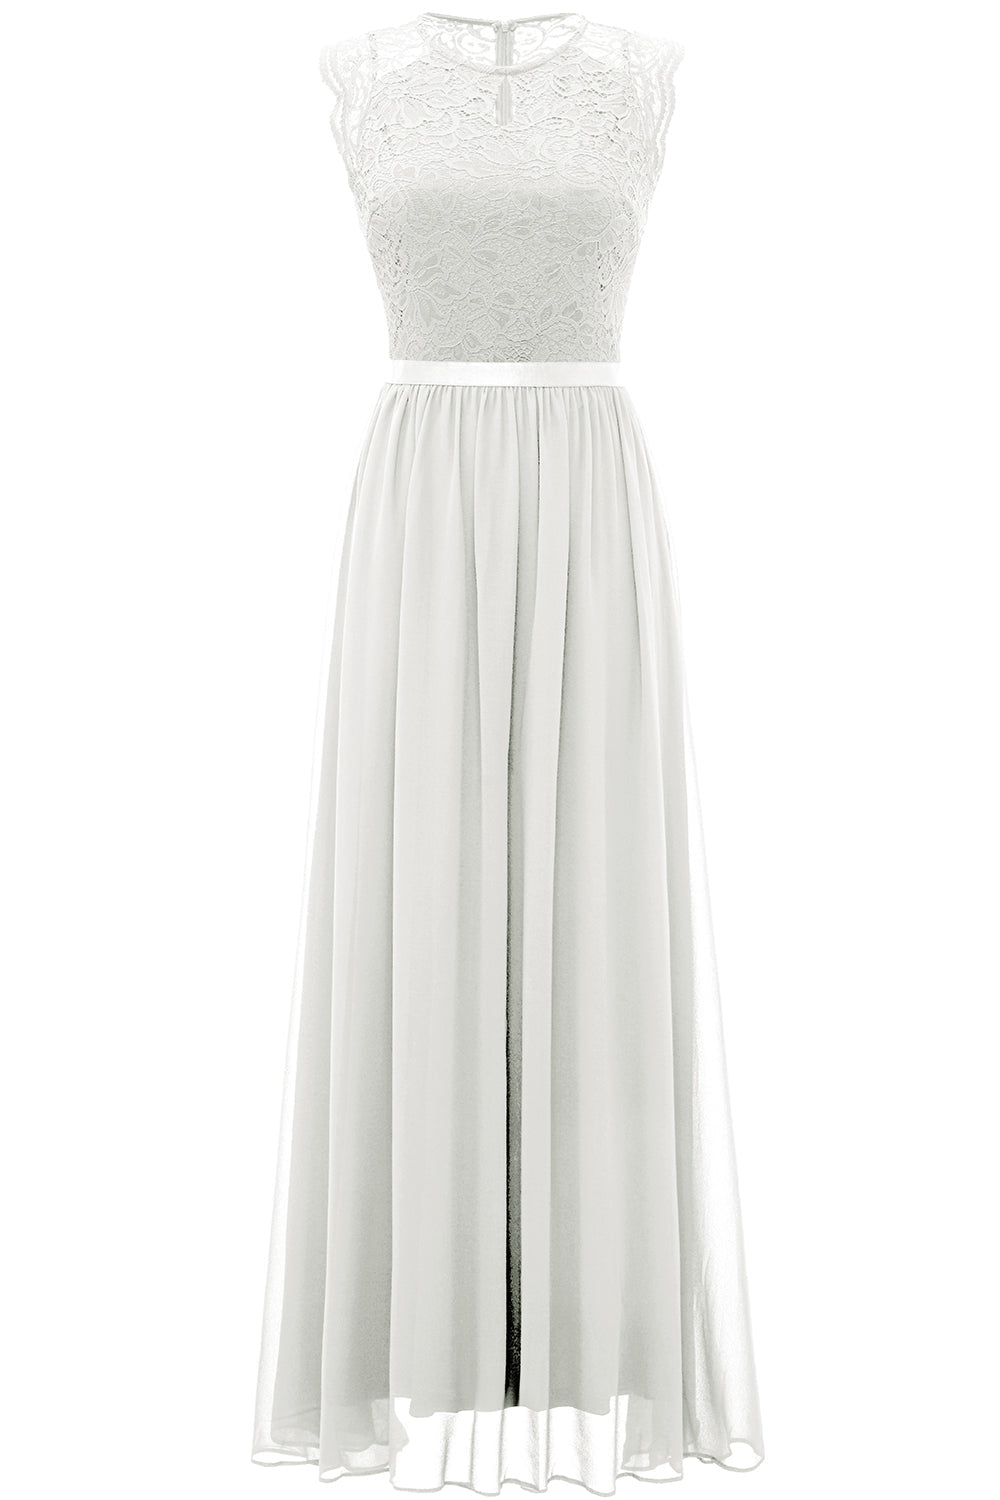 Biała koronkowa sukienka druhny